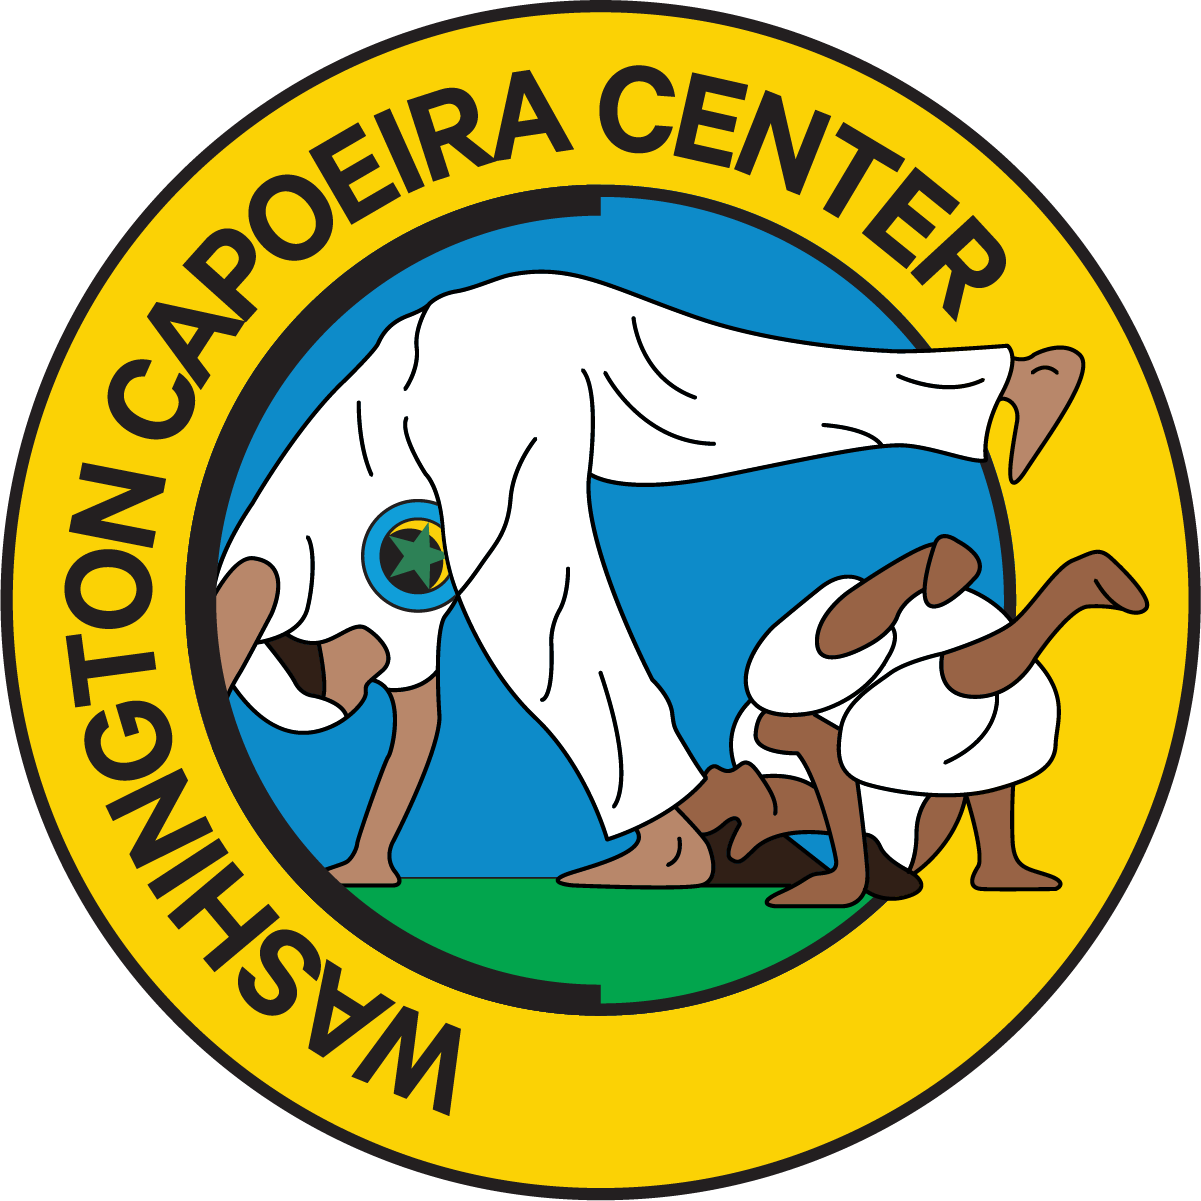 seattle capoeira center logo